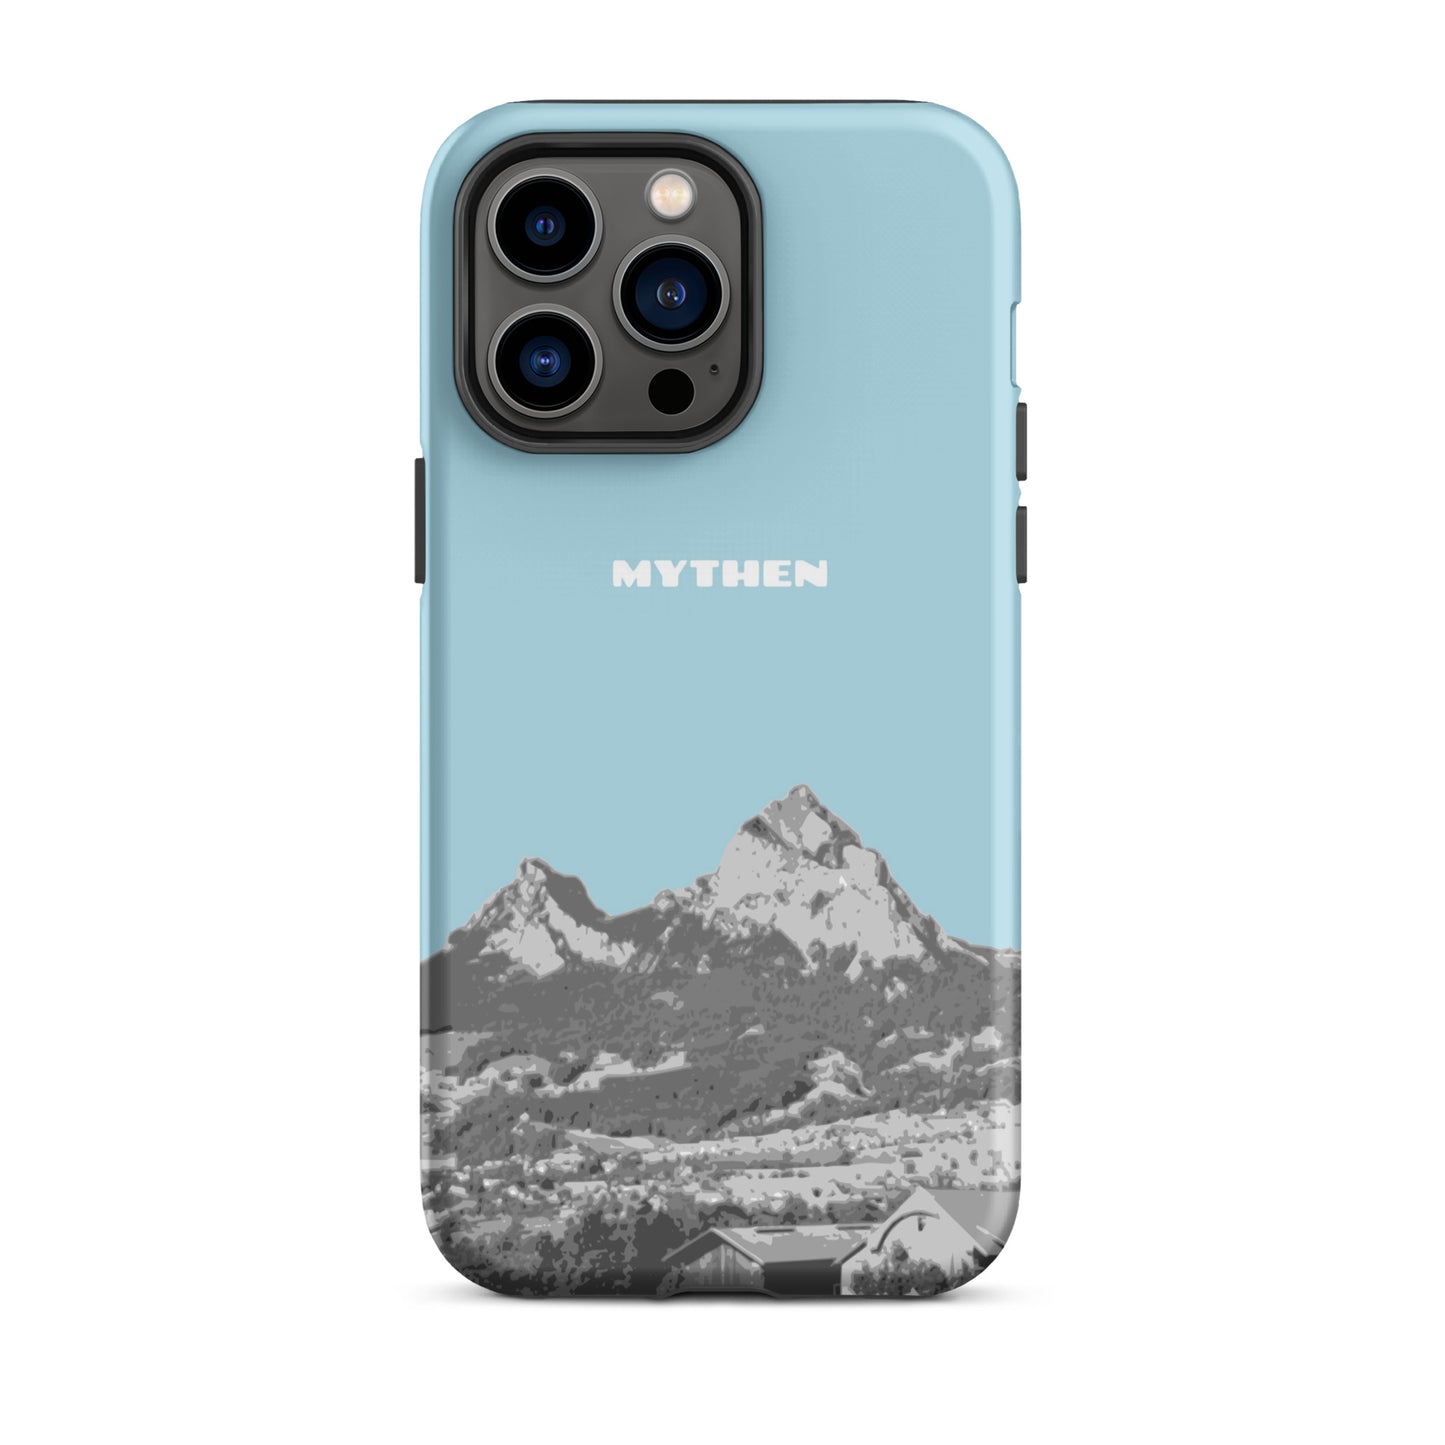 Hülle für das iPhone 14 Pro Max von Apple in der Farbe Hellblau, die den Grossen Mythen und den Kleinen Mythen bei Schwyz zeigt. 